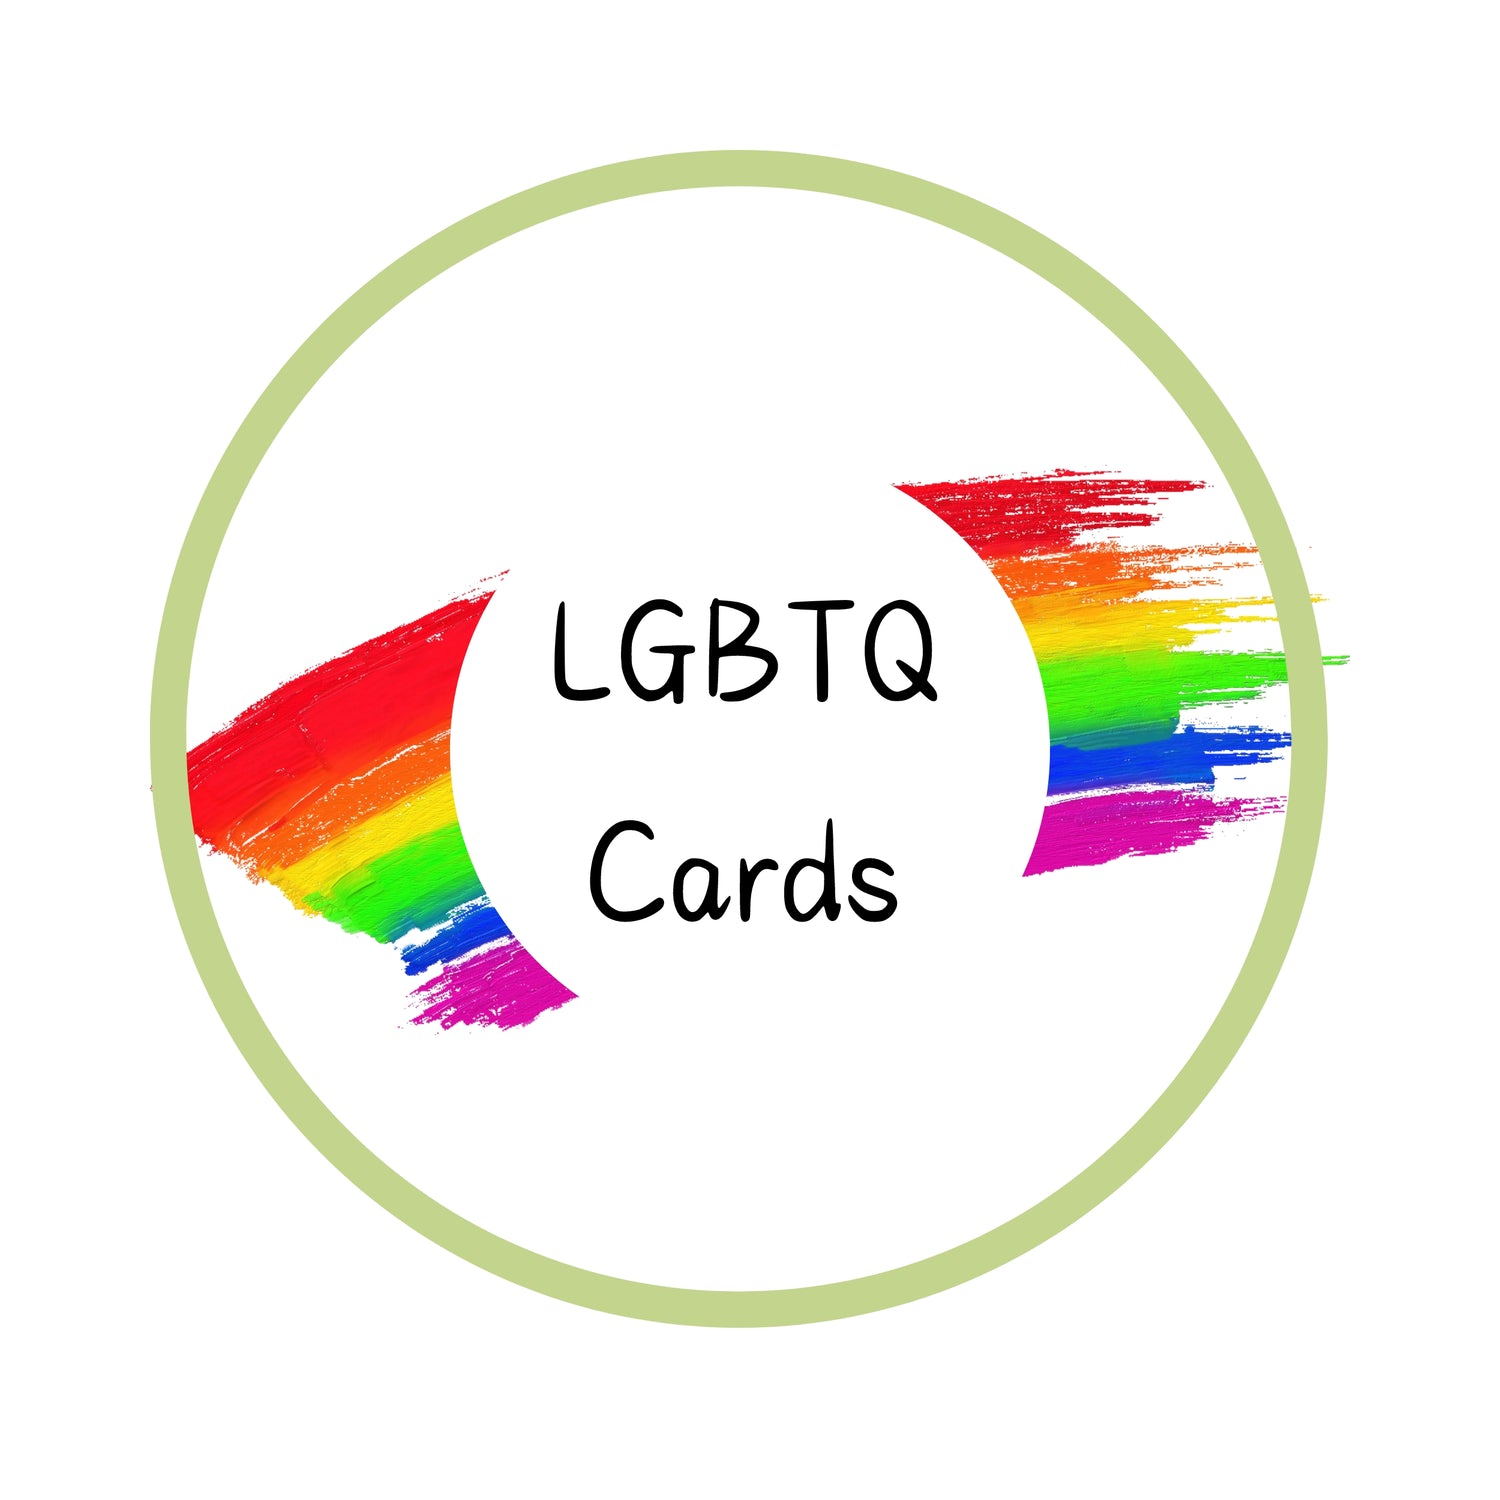 LGBTQ Cards